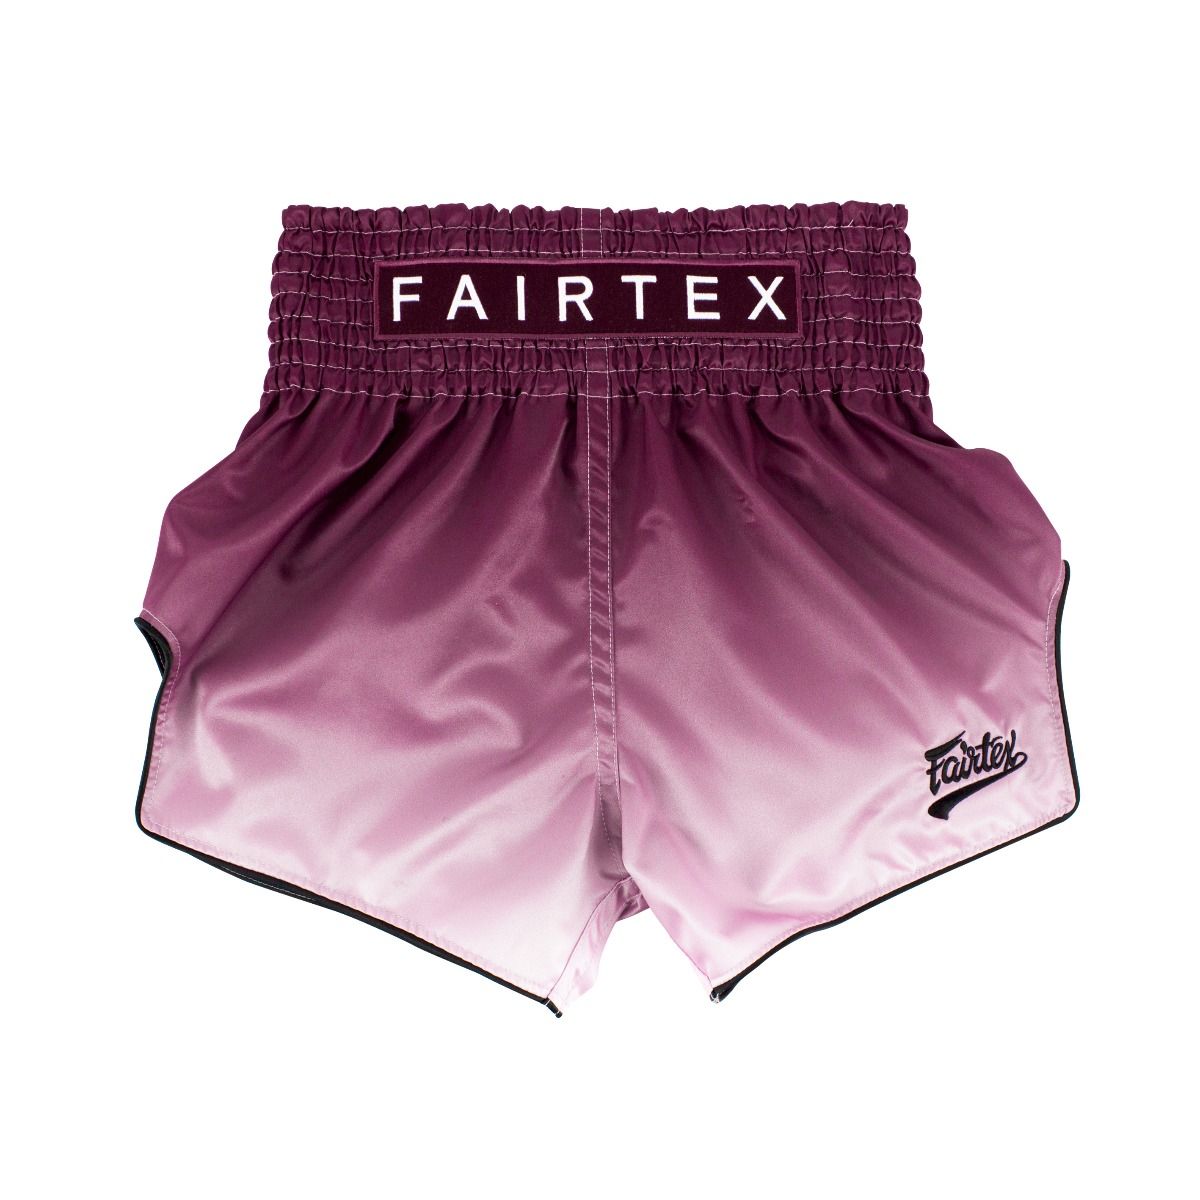 FAIRTEX Slim Cut Muaythai Shorts BS1904